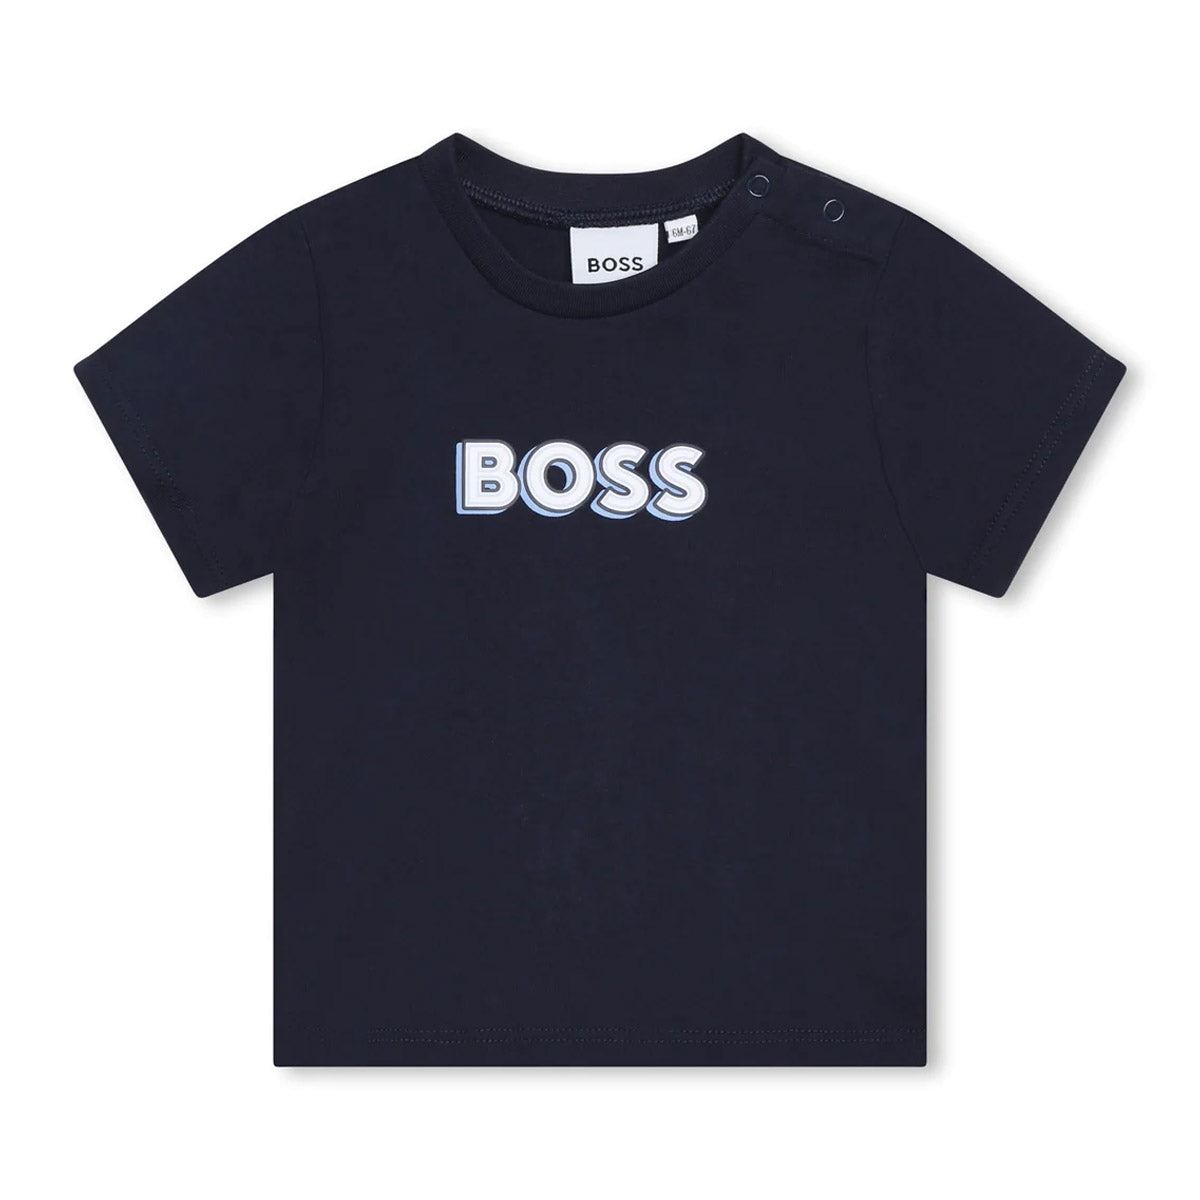 חולצת טי שרט BOSS לוגו מרכזי לתינוקות